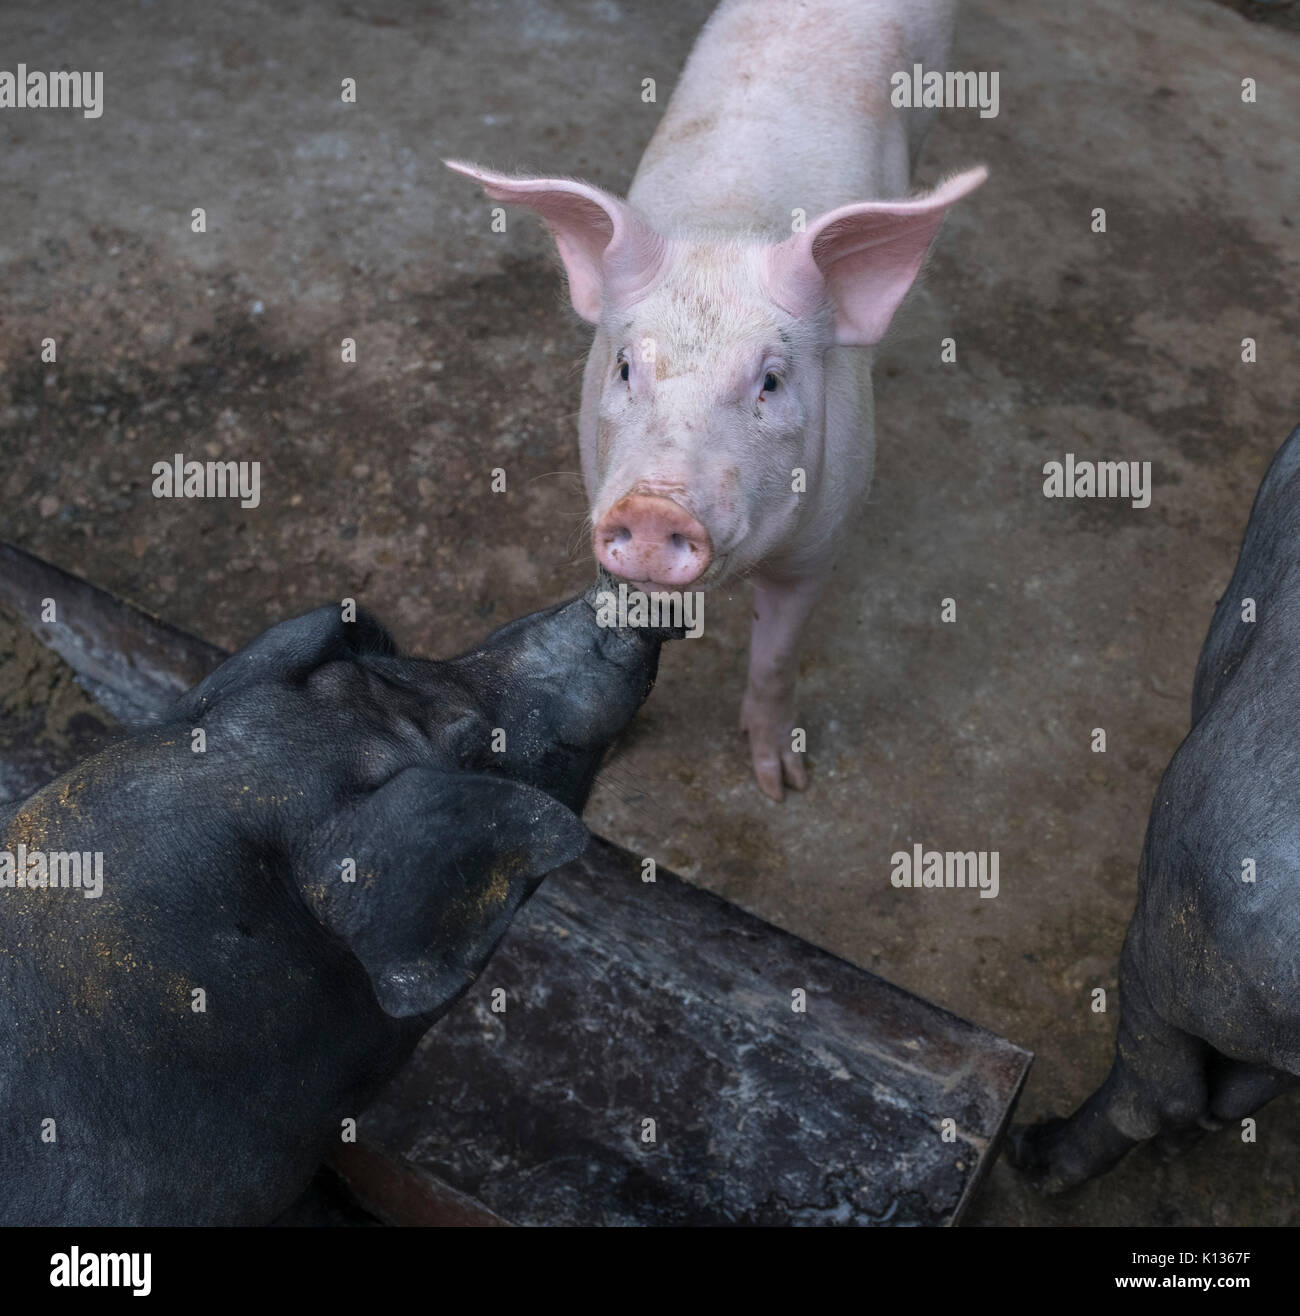 Raza híbrida de cerdos en una granja de cerdos domésticos que son hybridizing de jabalí con el cerdo doméstico en Huairou, Beijing, China. 24-ago-2017 Foto de stock